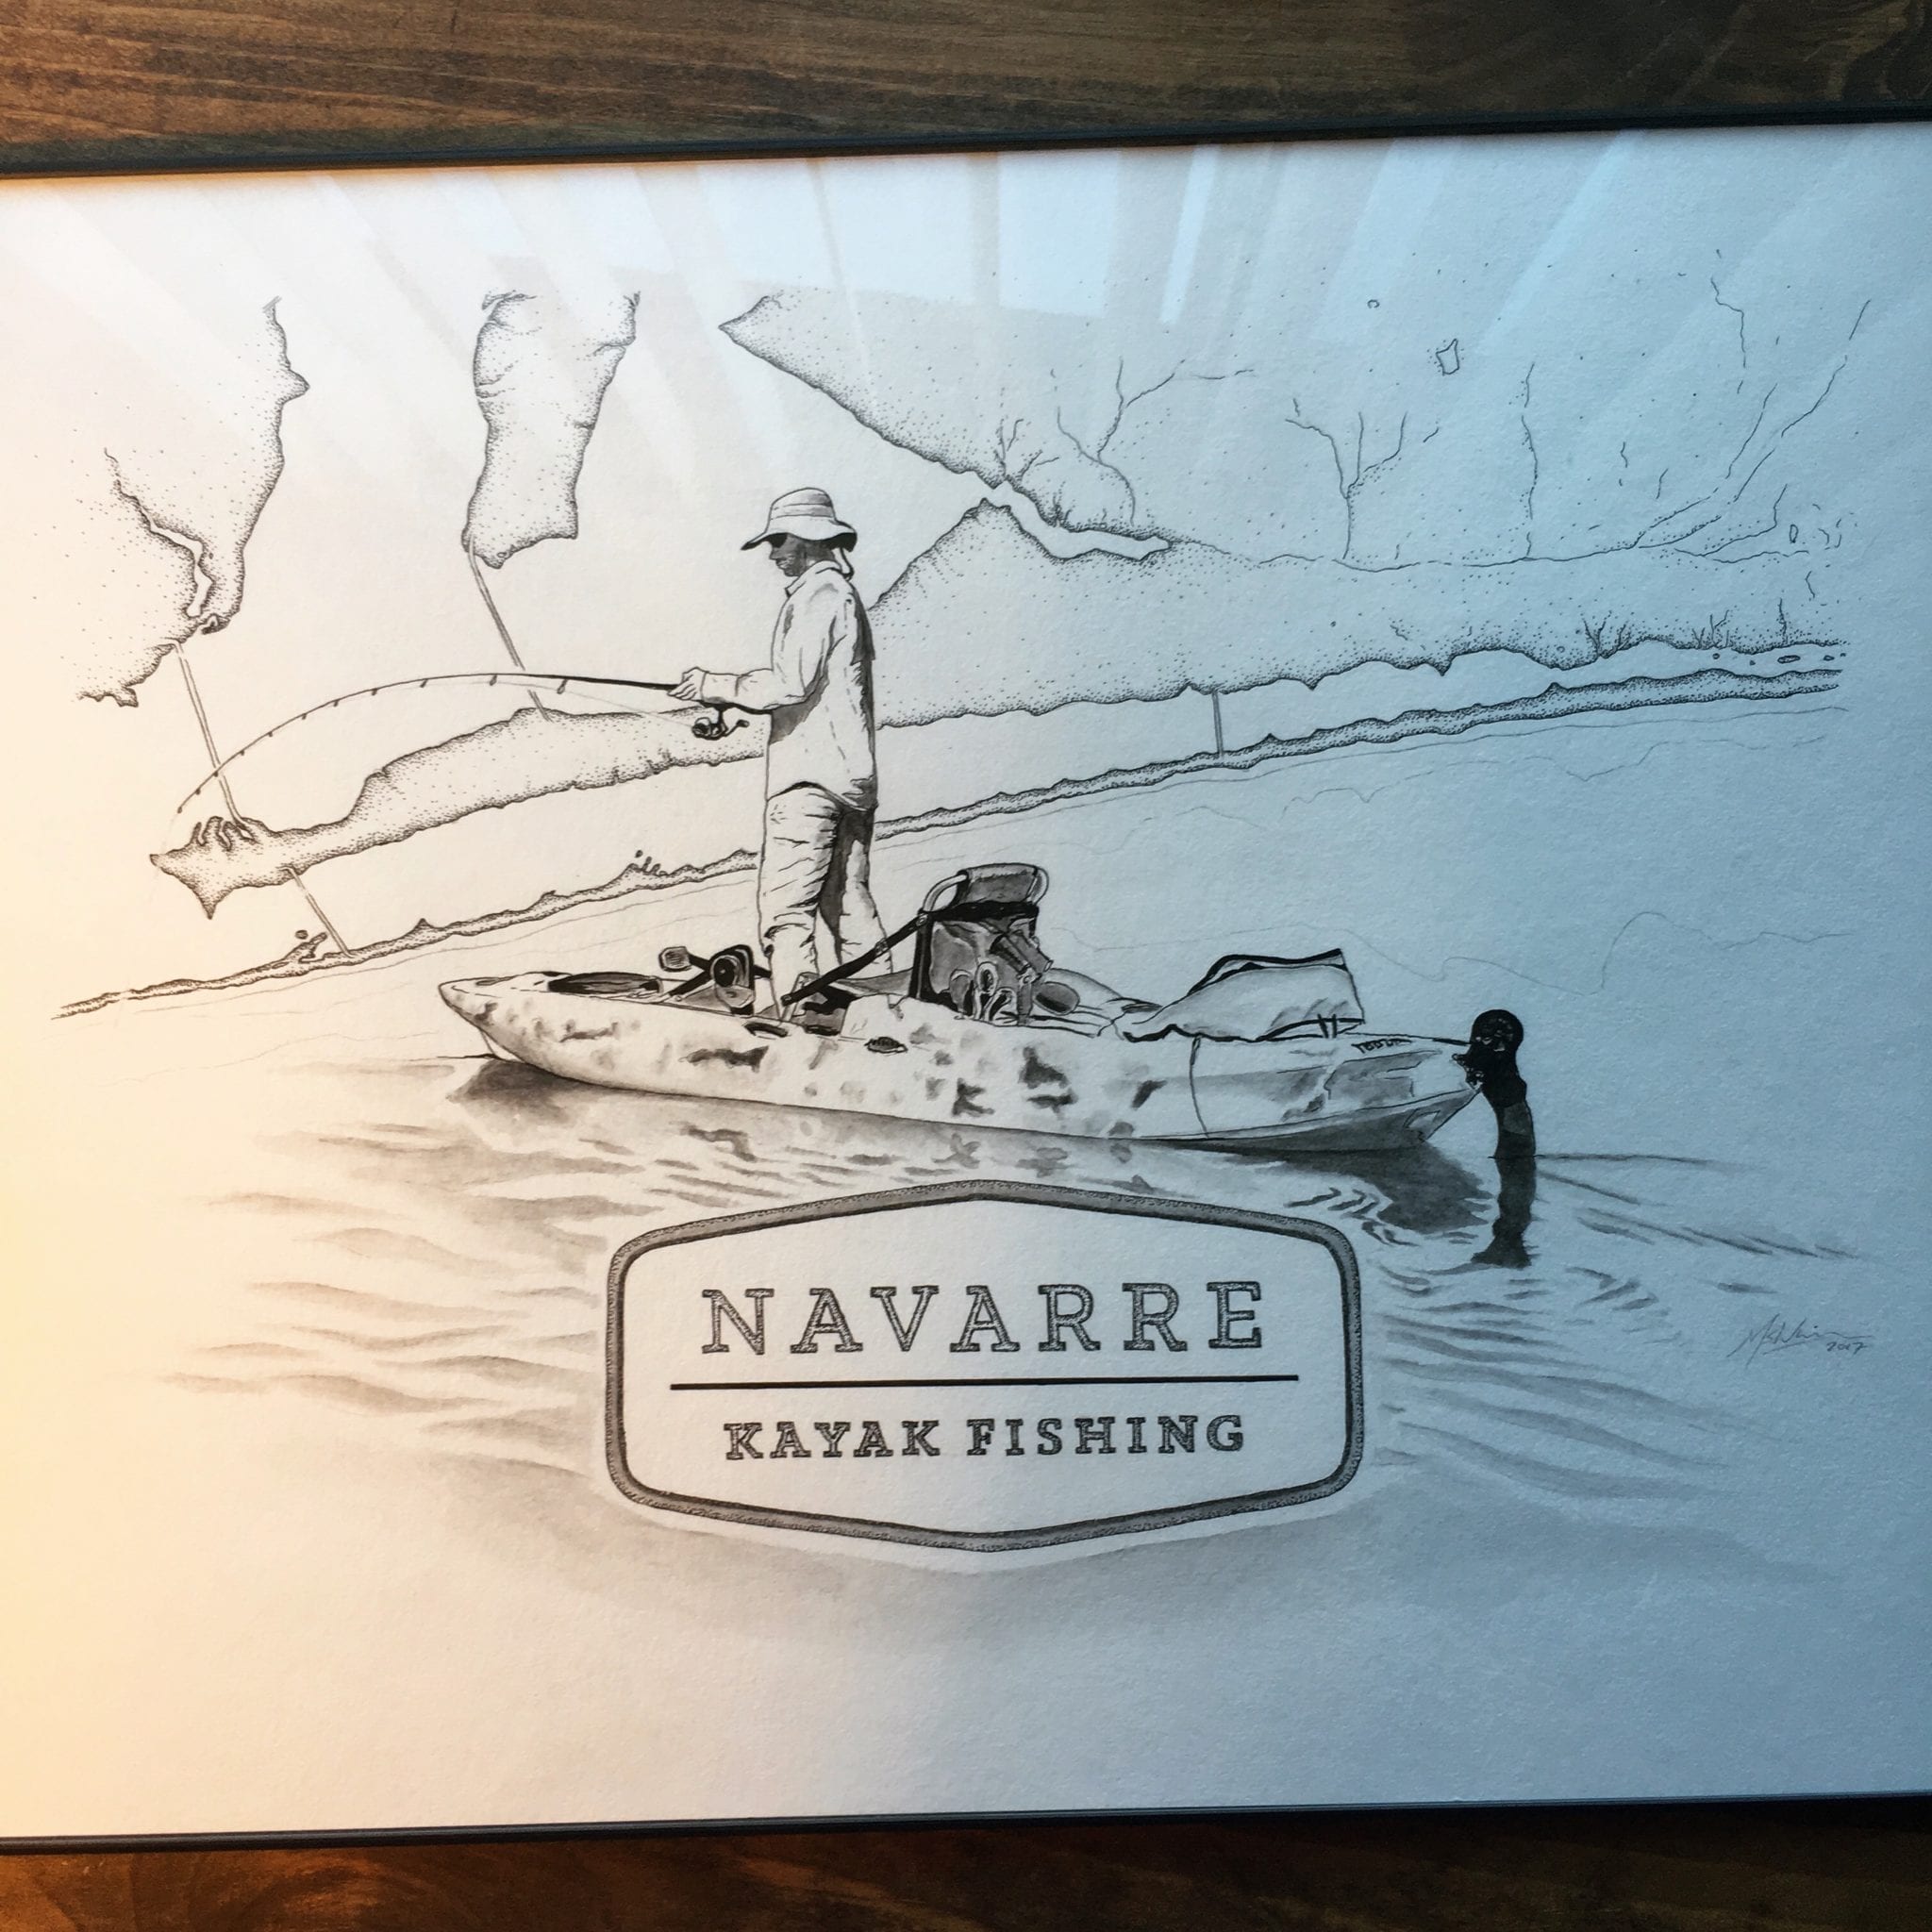 Navarre Kayak Fishing Pensacola Kayak Fishing Destin Kayak Fishing